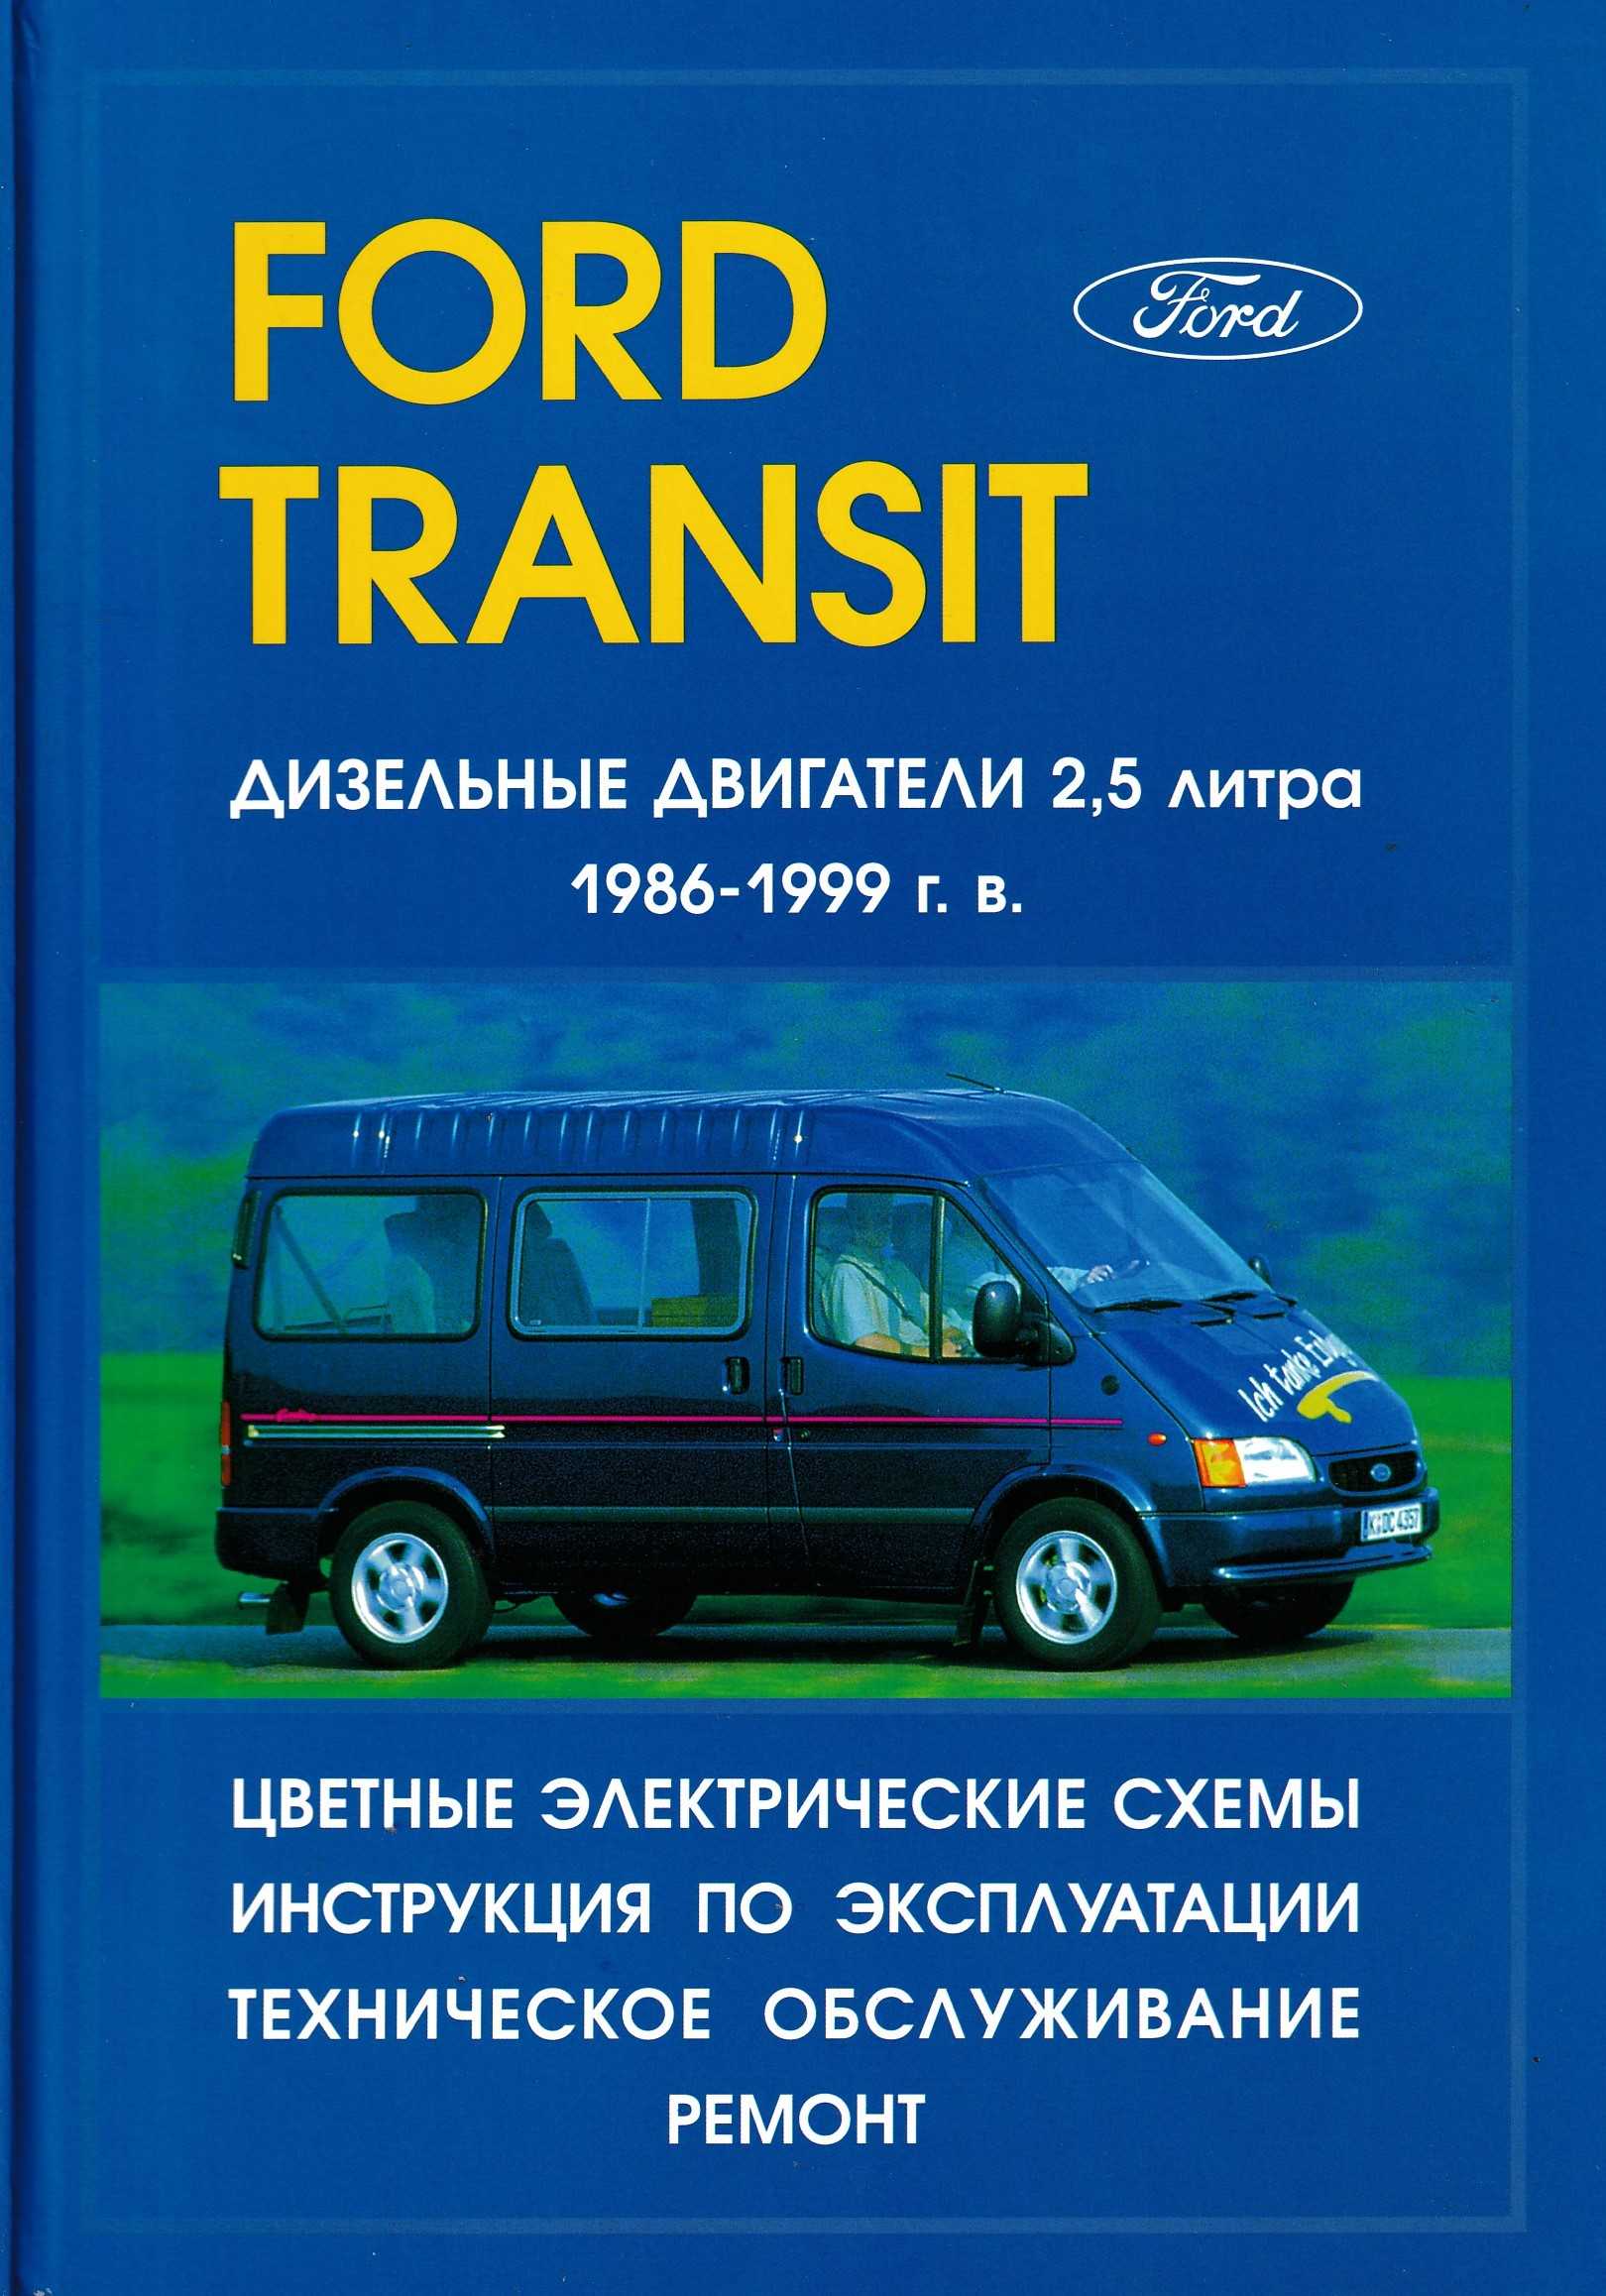 Ford transit (v347/348) / tourneo (bus m1/m2) / kombi / van / supervan / cargo / cargo van / cargo space c 2006 г. (с учетом обновления 2011 г.) руководство по ремонту и эксплуатации